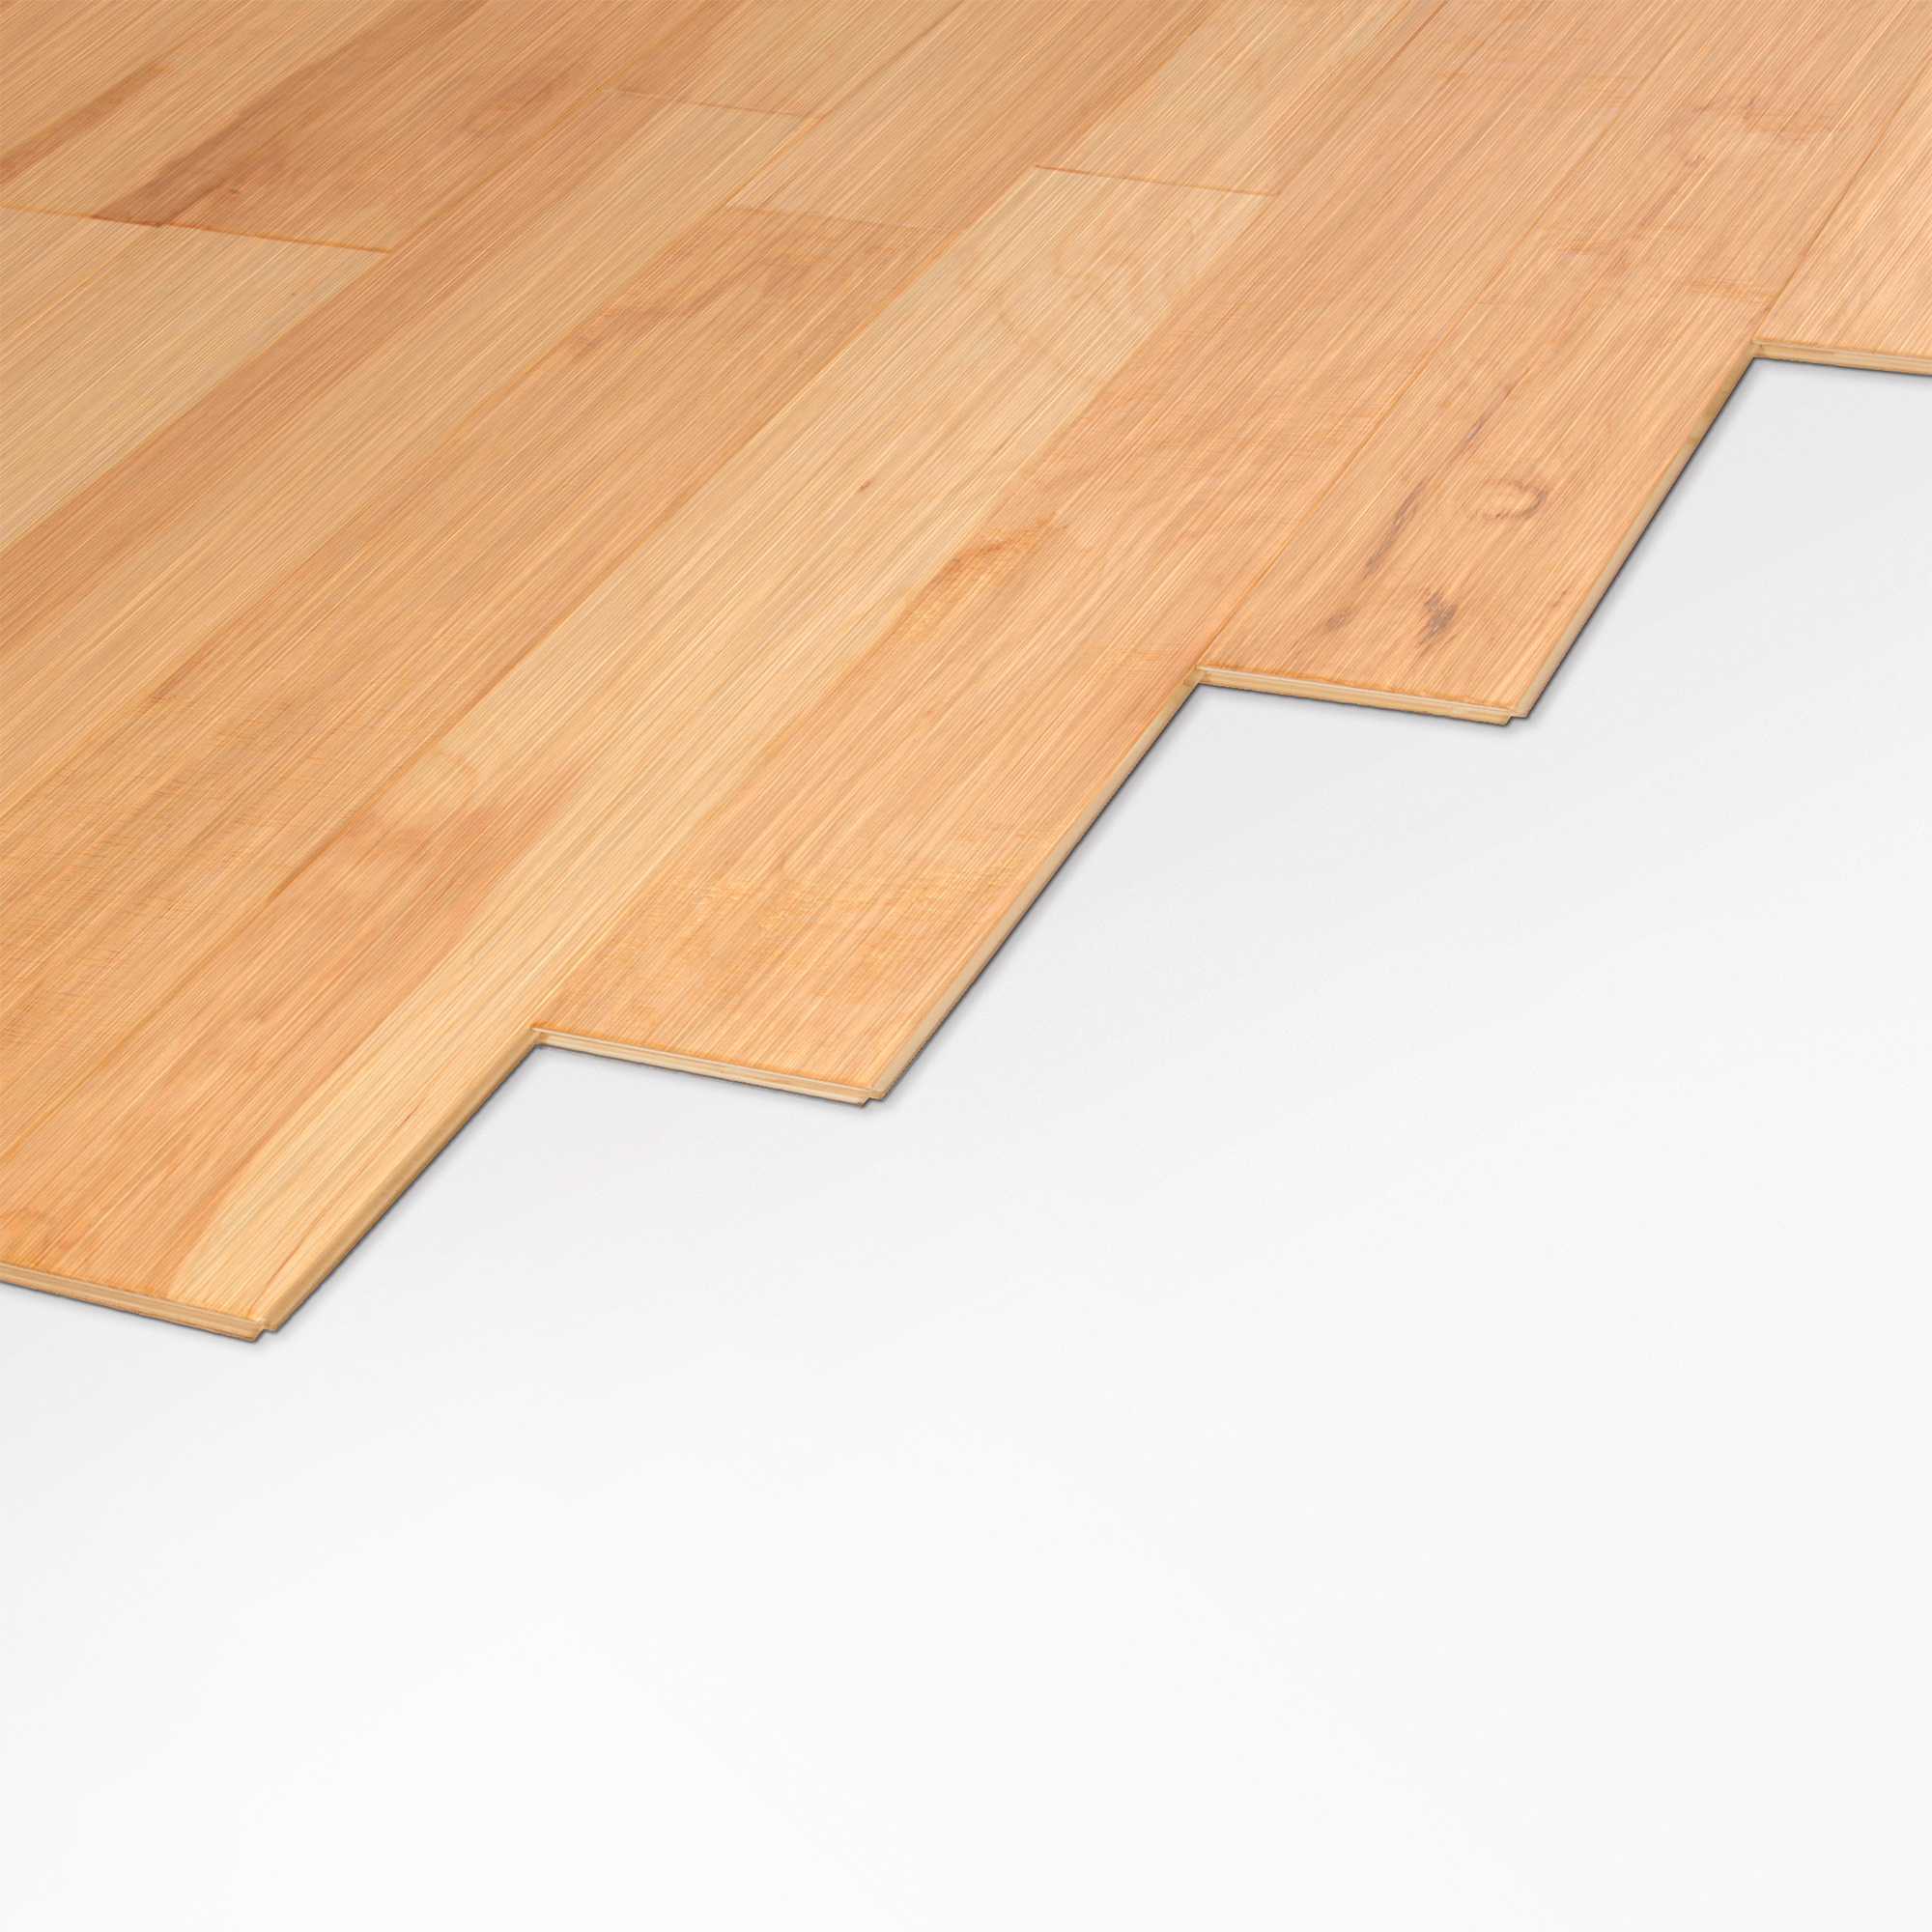 Underlayments Roberts Consolidated, Hardwood Floor Moisture Barrier